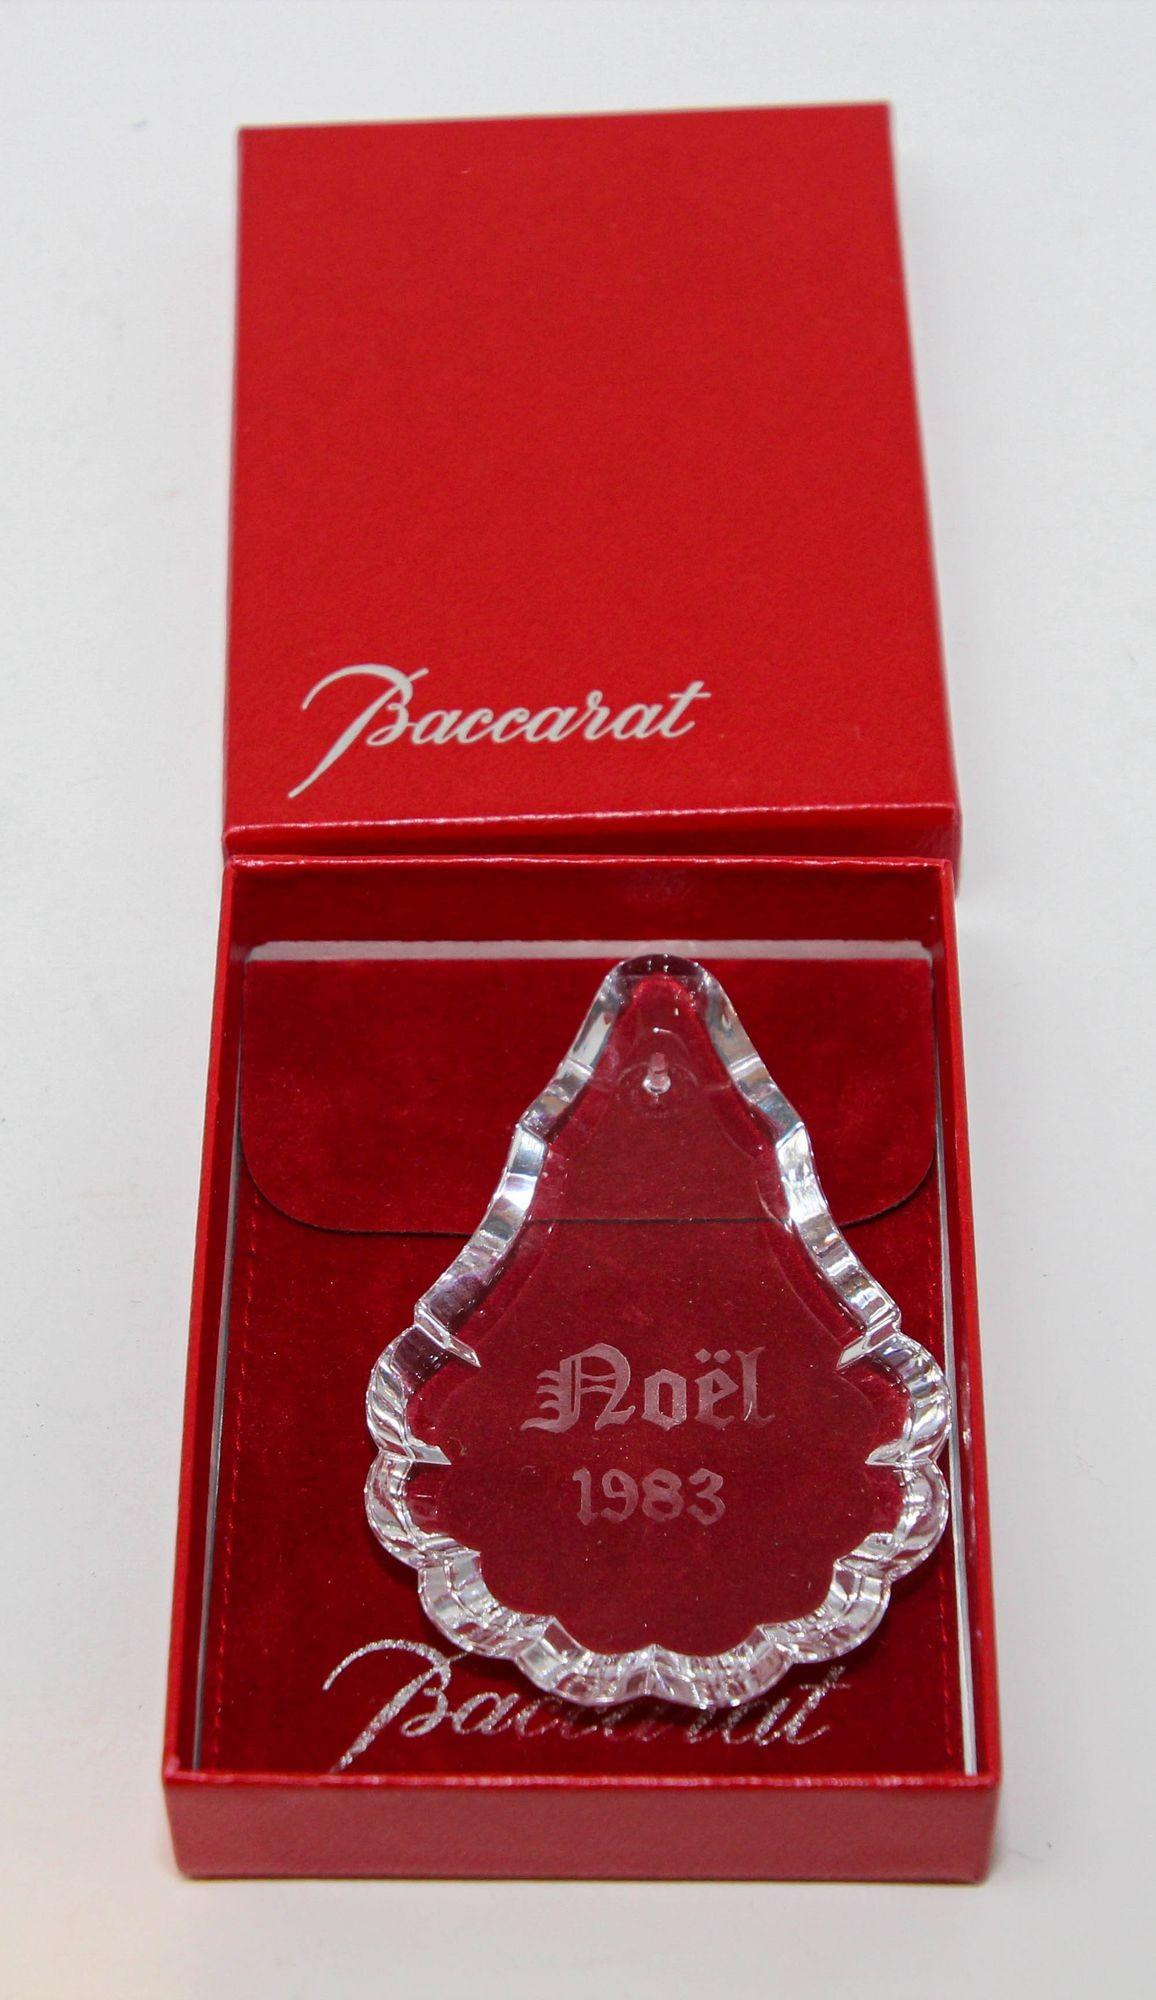 Ornement de Noël annuel 1983 en cristal de Baccarat.
Il s'agit de la première année où Baccarat a publié un ornement annuel et il est extrêmement rare.
Pièce de collection de l'année 1983, fabriquée en France.
Fabriqué à la main en France. Livré